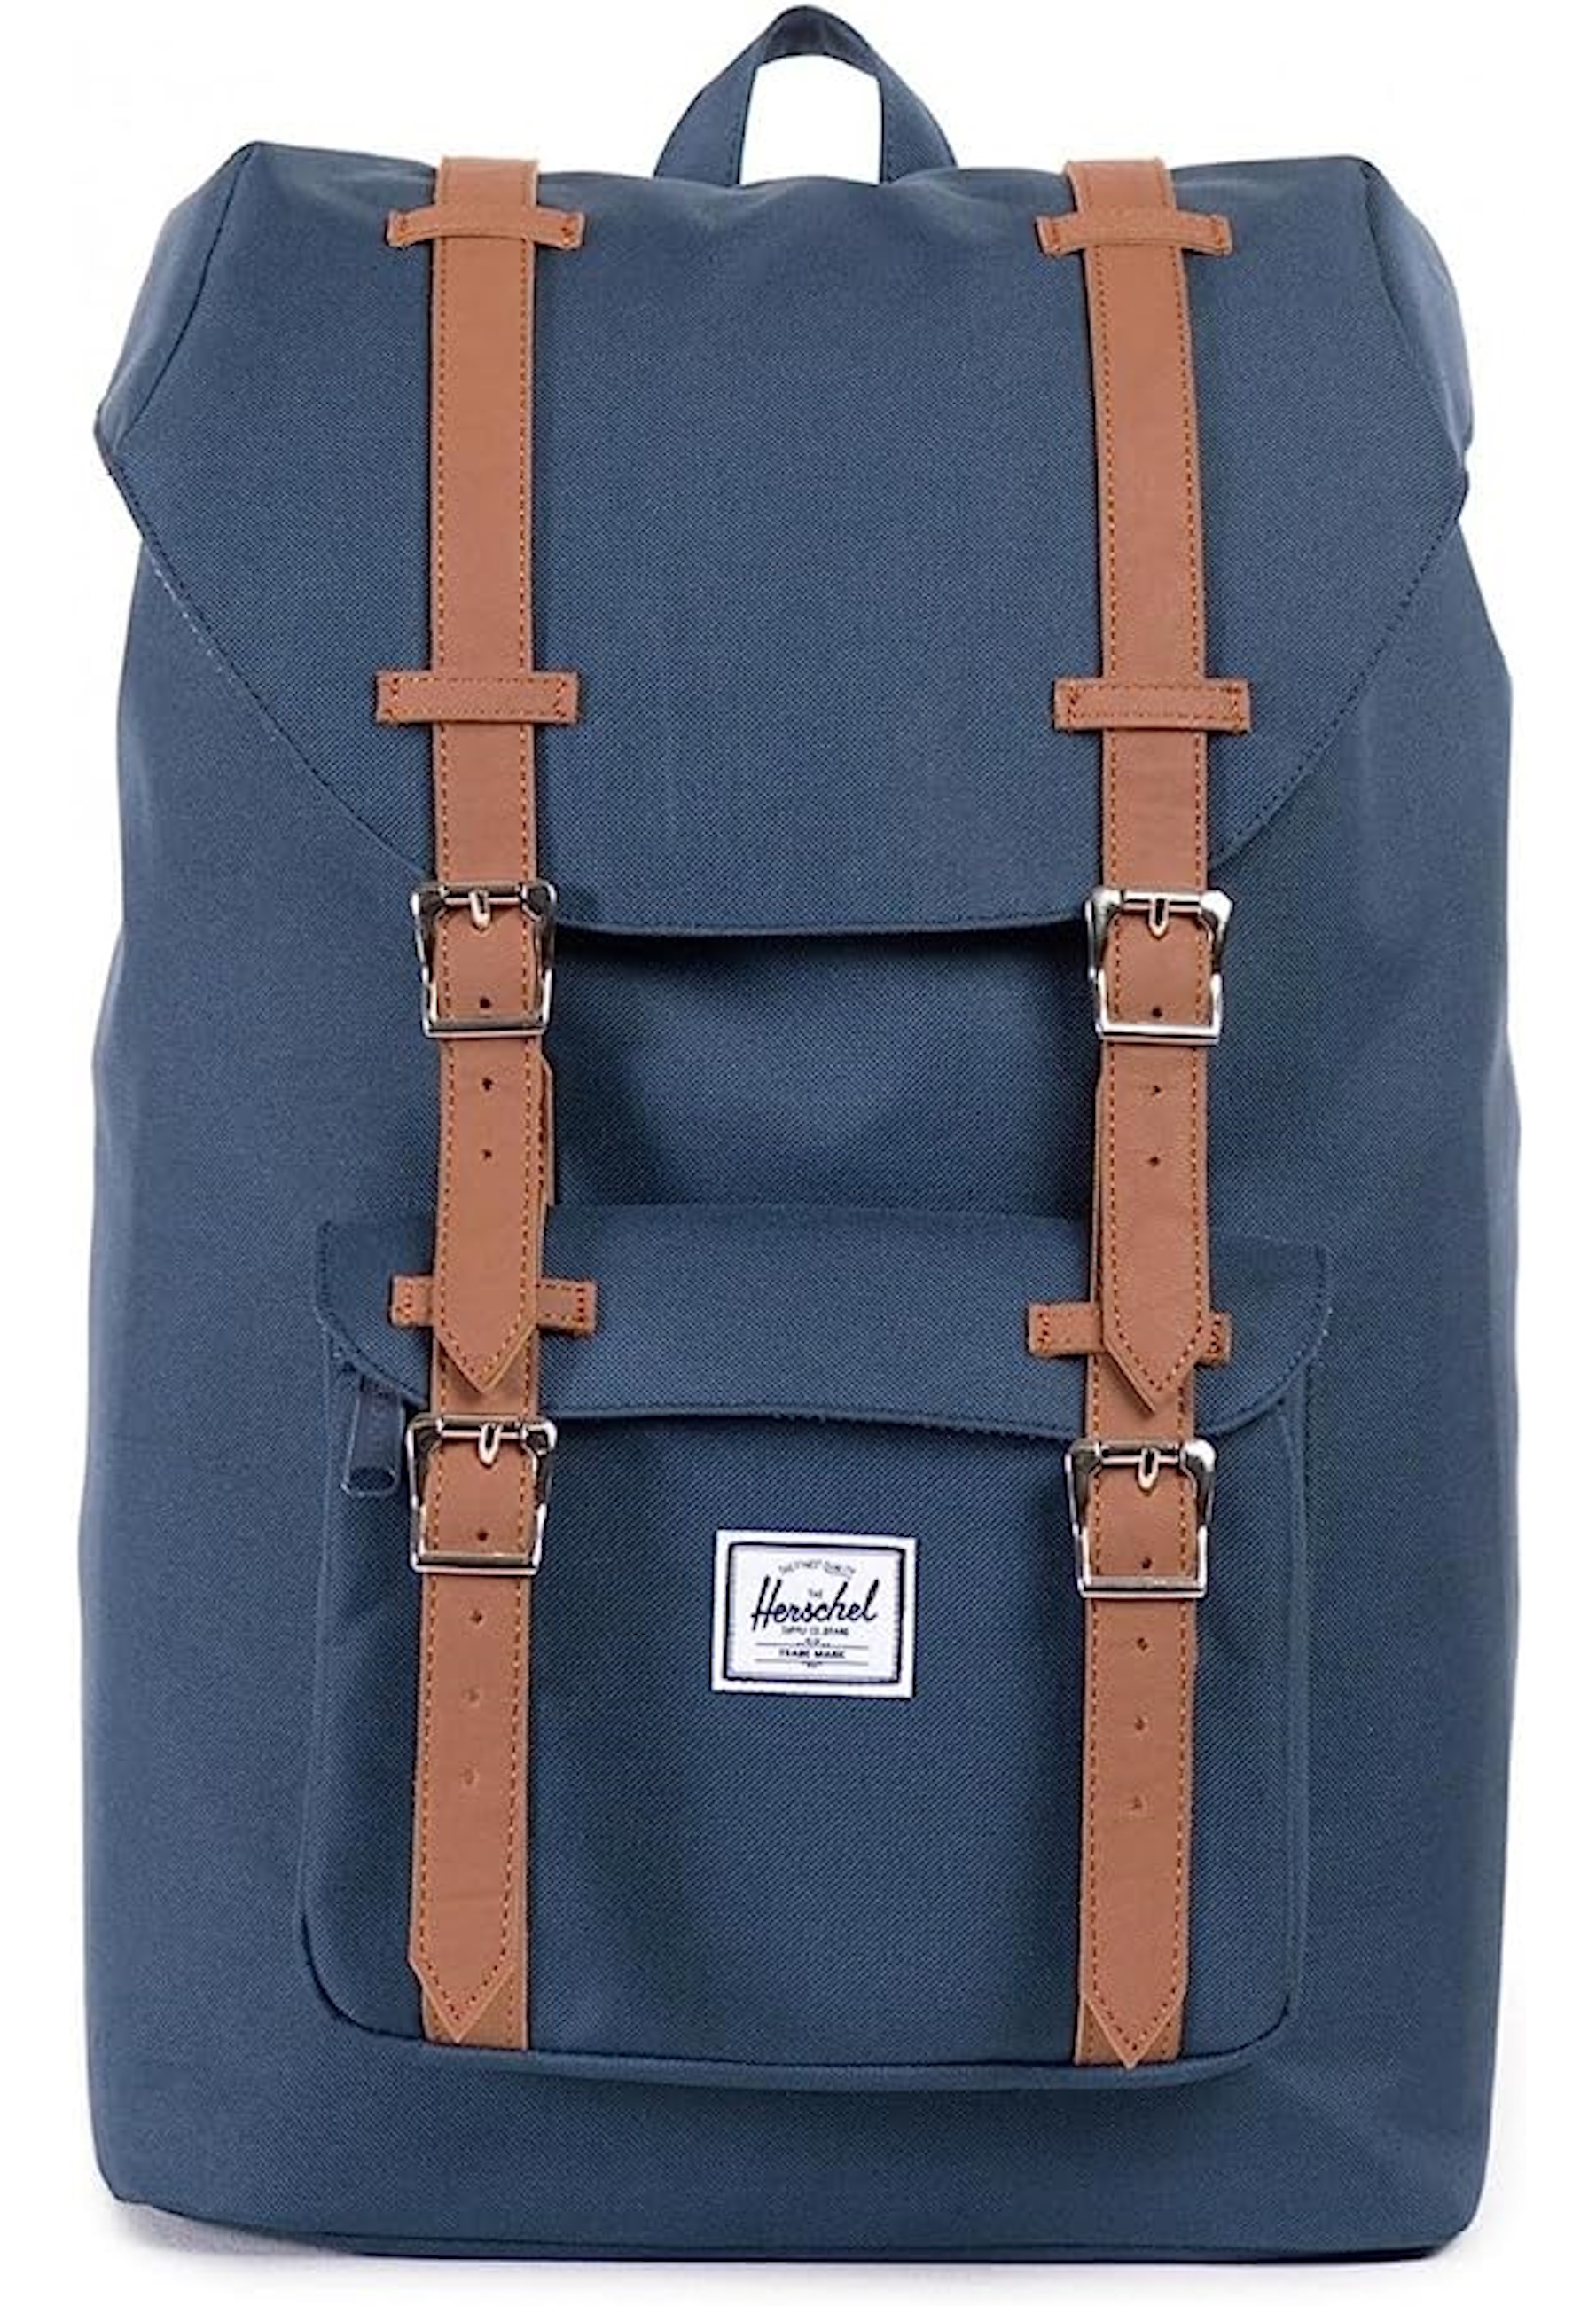 Рюкзак Herschel 'Little America Mid', синий рюкзак little america для планшета 15 единый размер синий